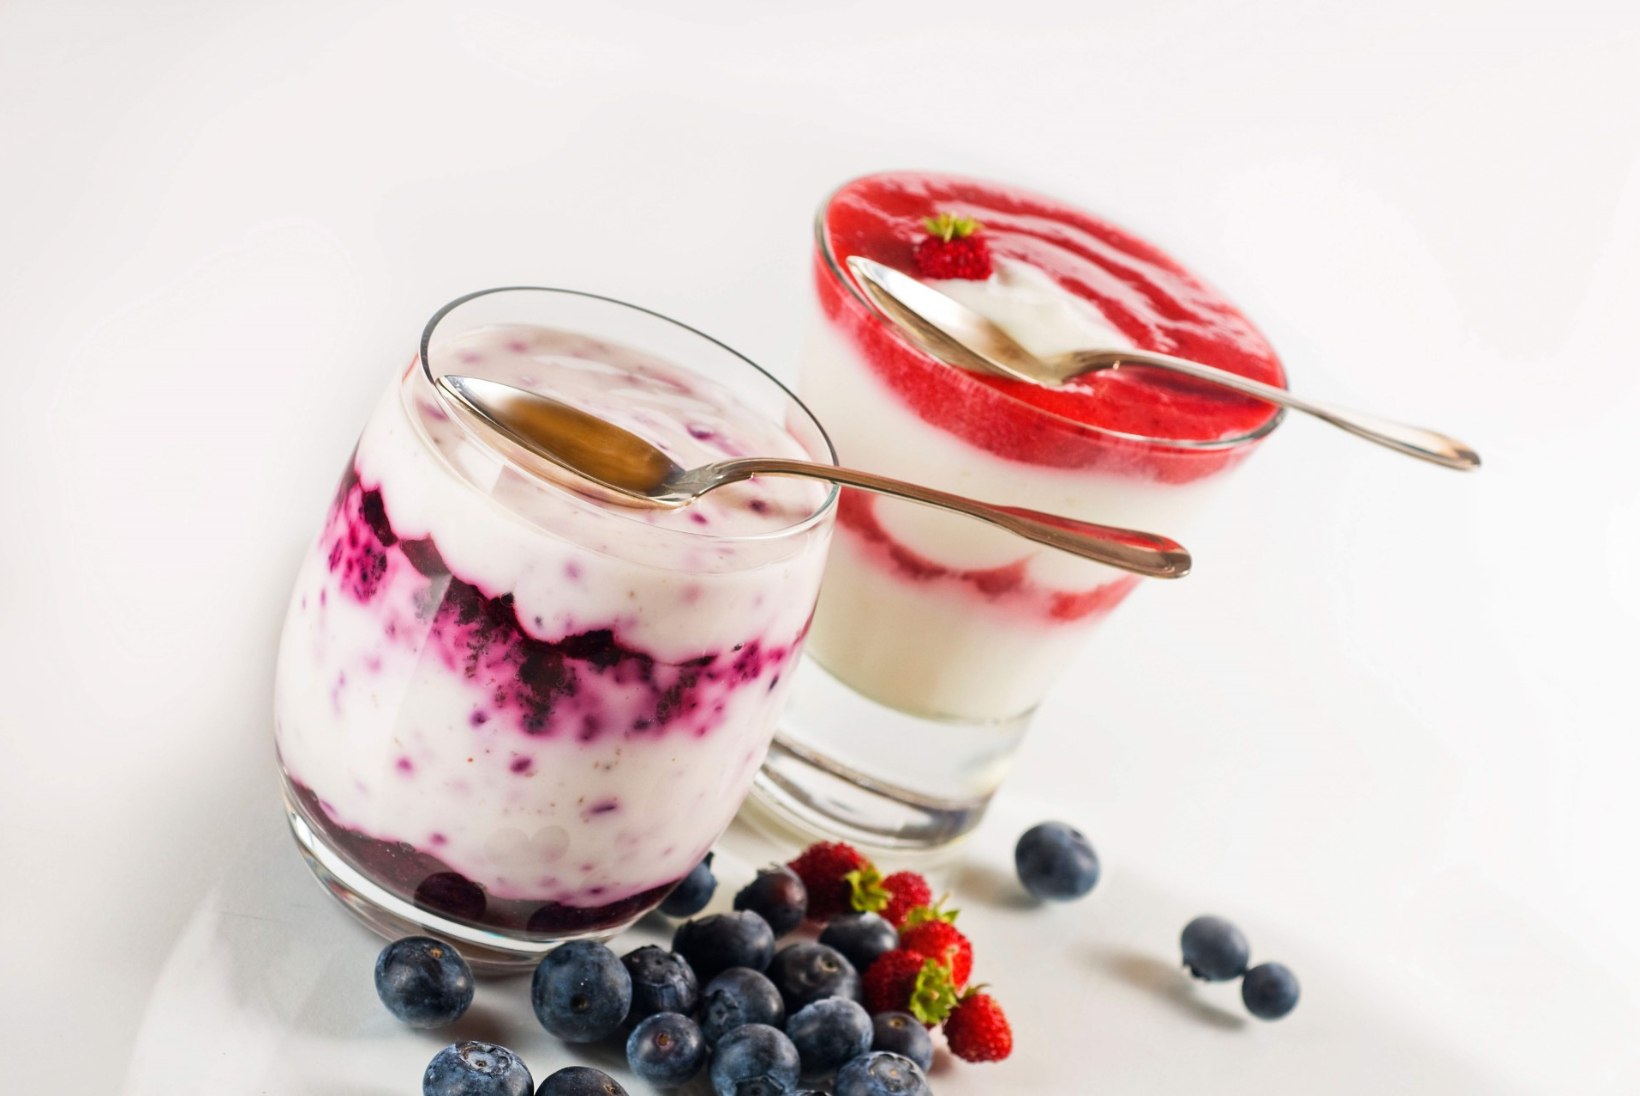 Kas jogurti söömine võib tekitada vähki?